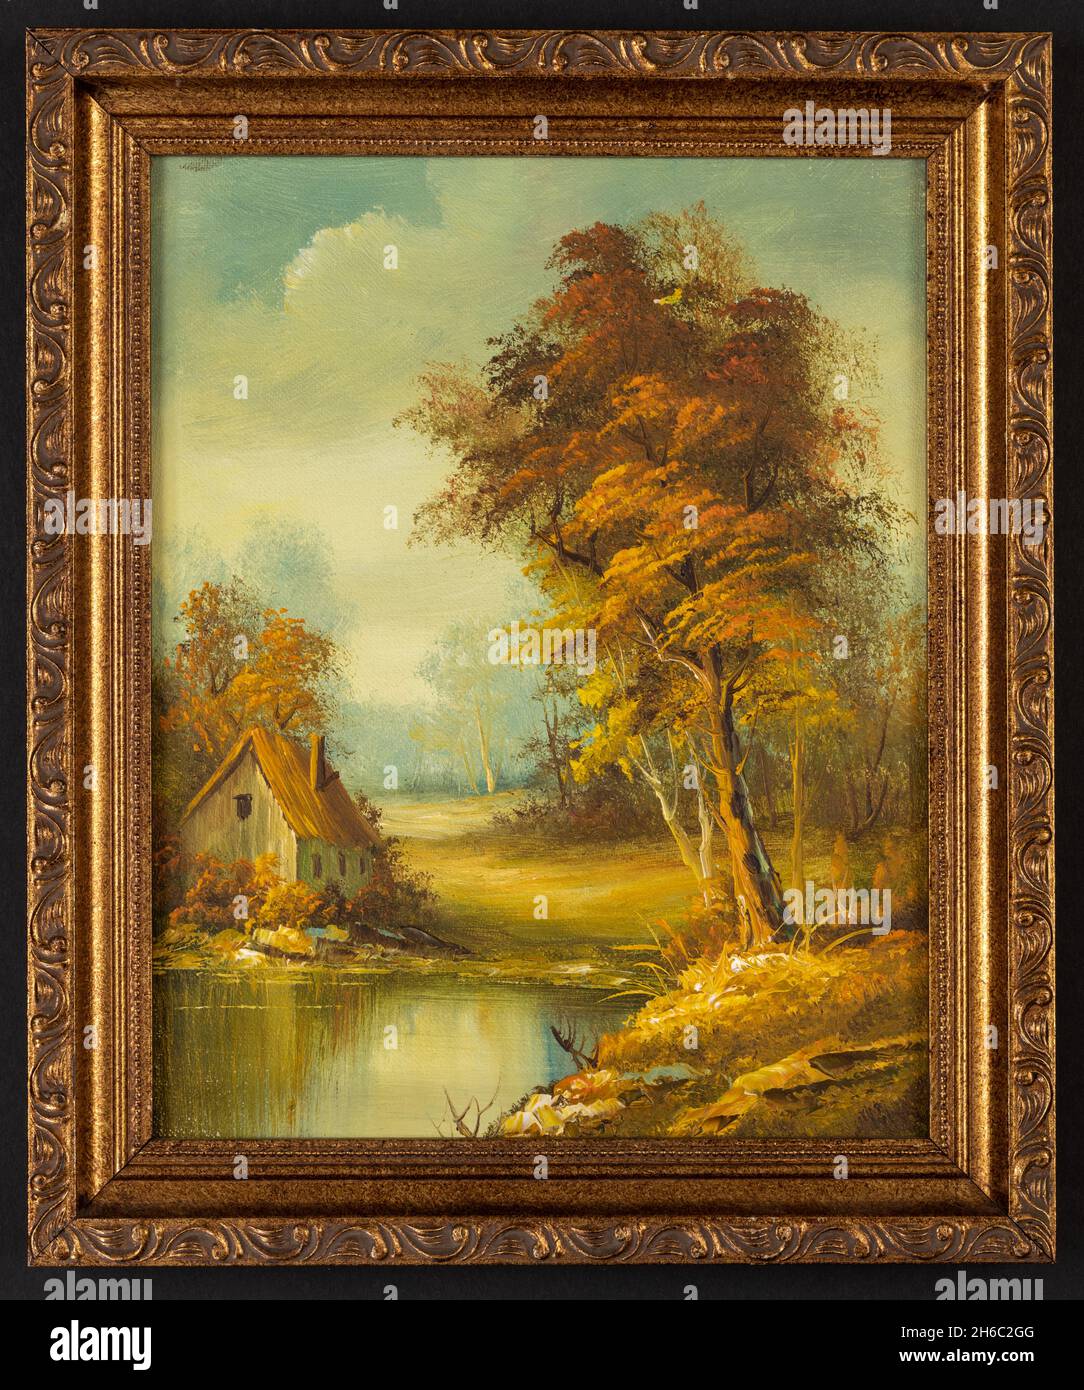 Peinture à l'huile d'époque encadrée représentant une petite cabane près d'un lac et de bois. Banque D'Images